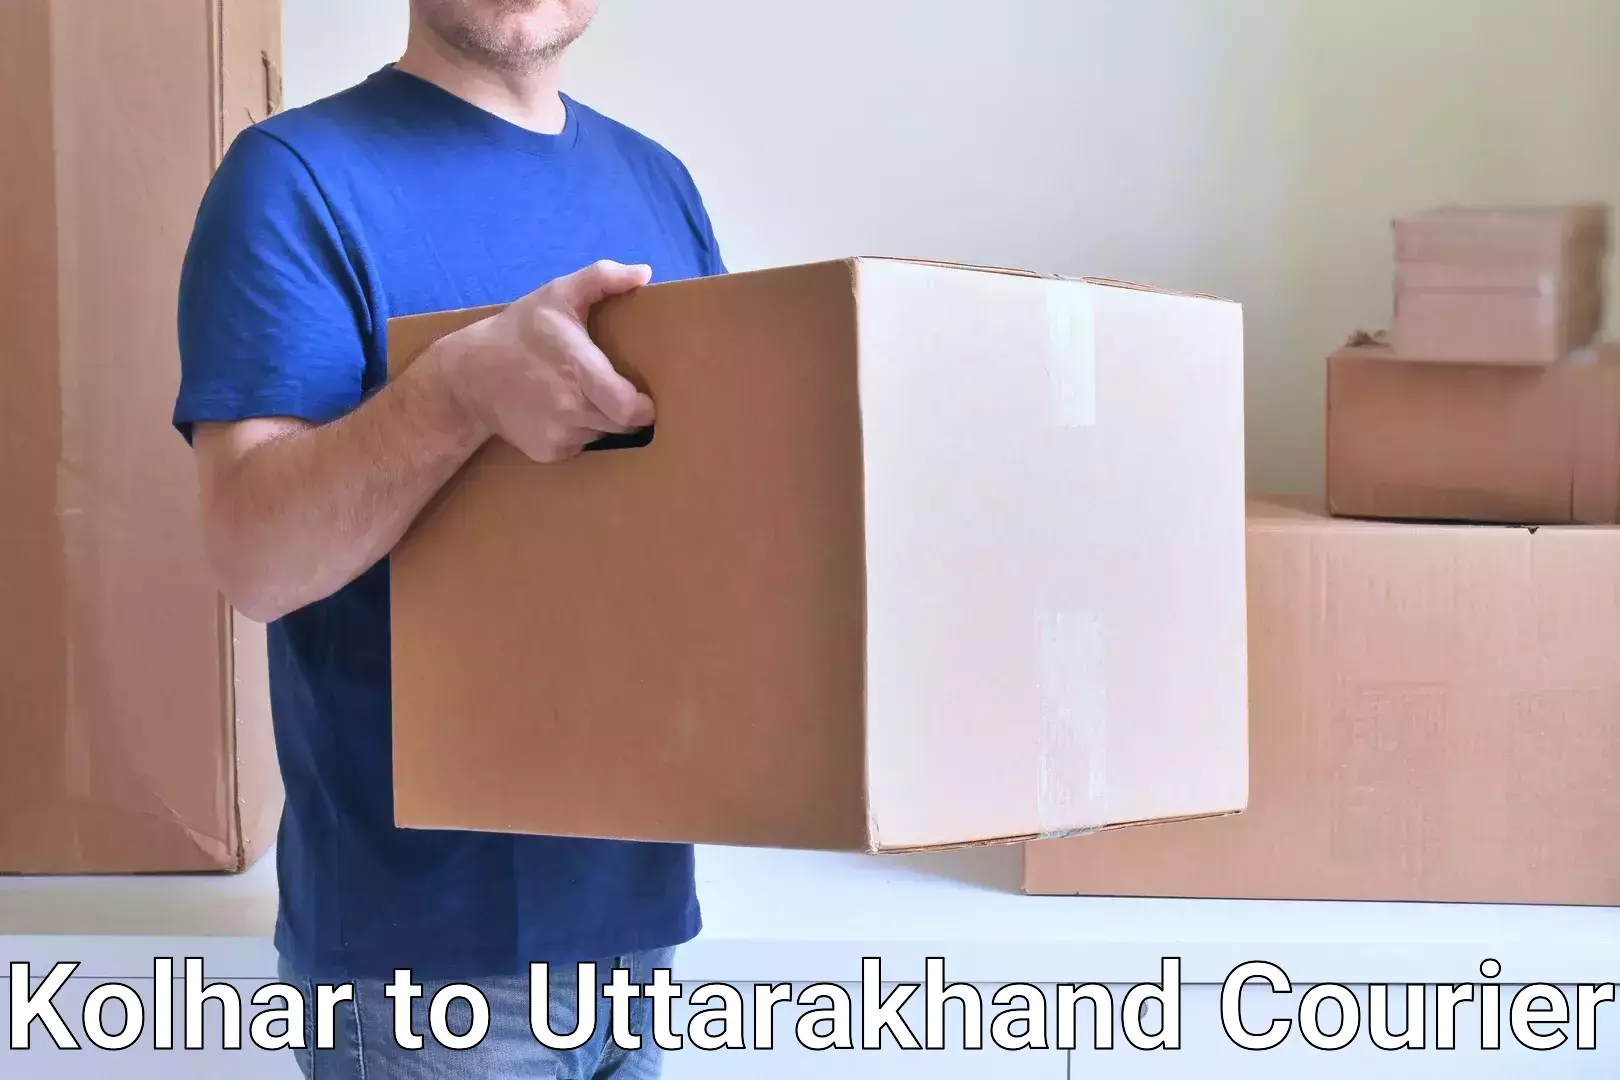 Bulk courier orders Kolhar to Uttarakhand